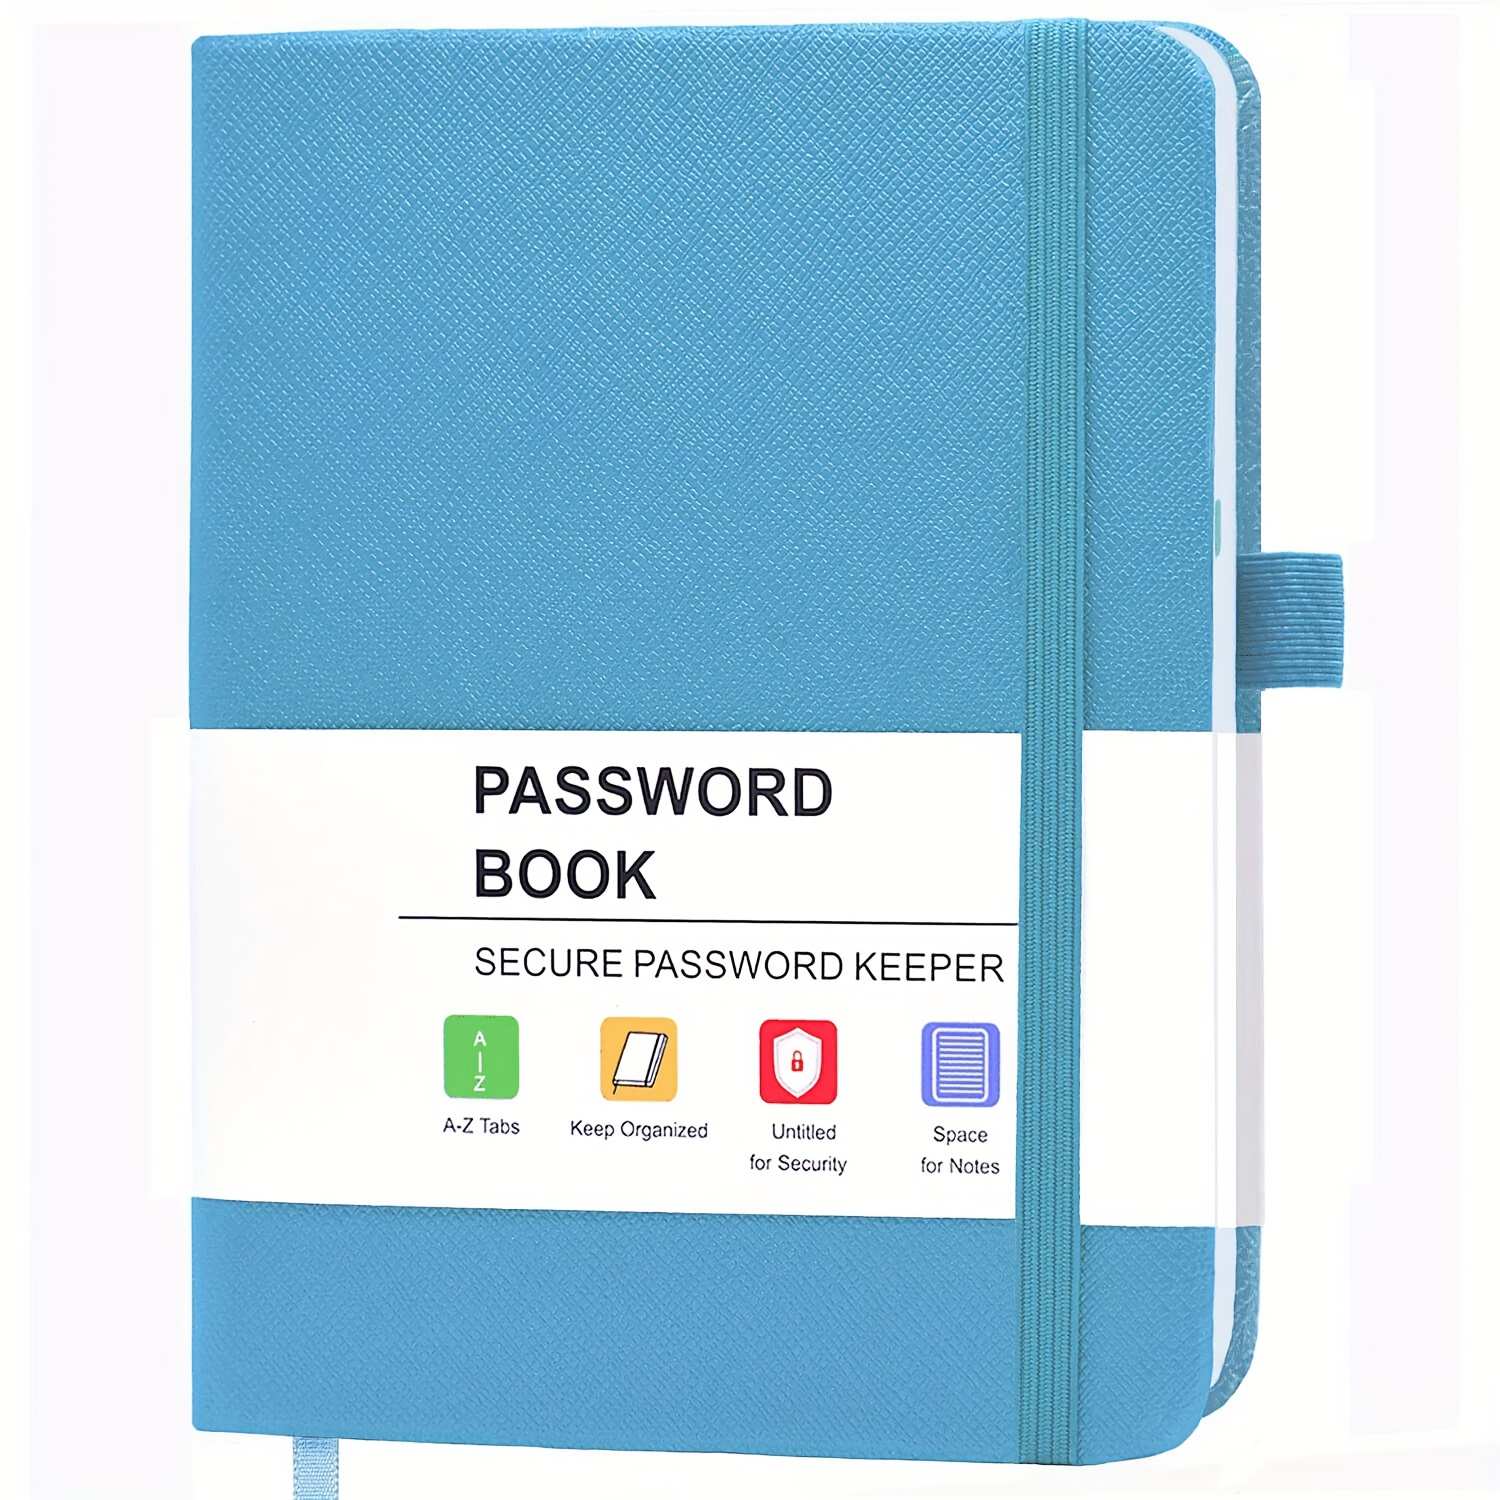 Password Libro: Agenda per password, regalo perfetto per festa della mama,  papà, nonni  formato tascabile (Il Quaderno delle Password) (Italian